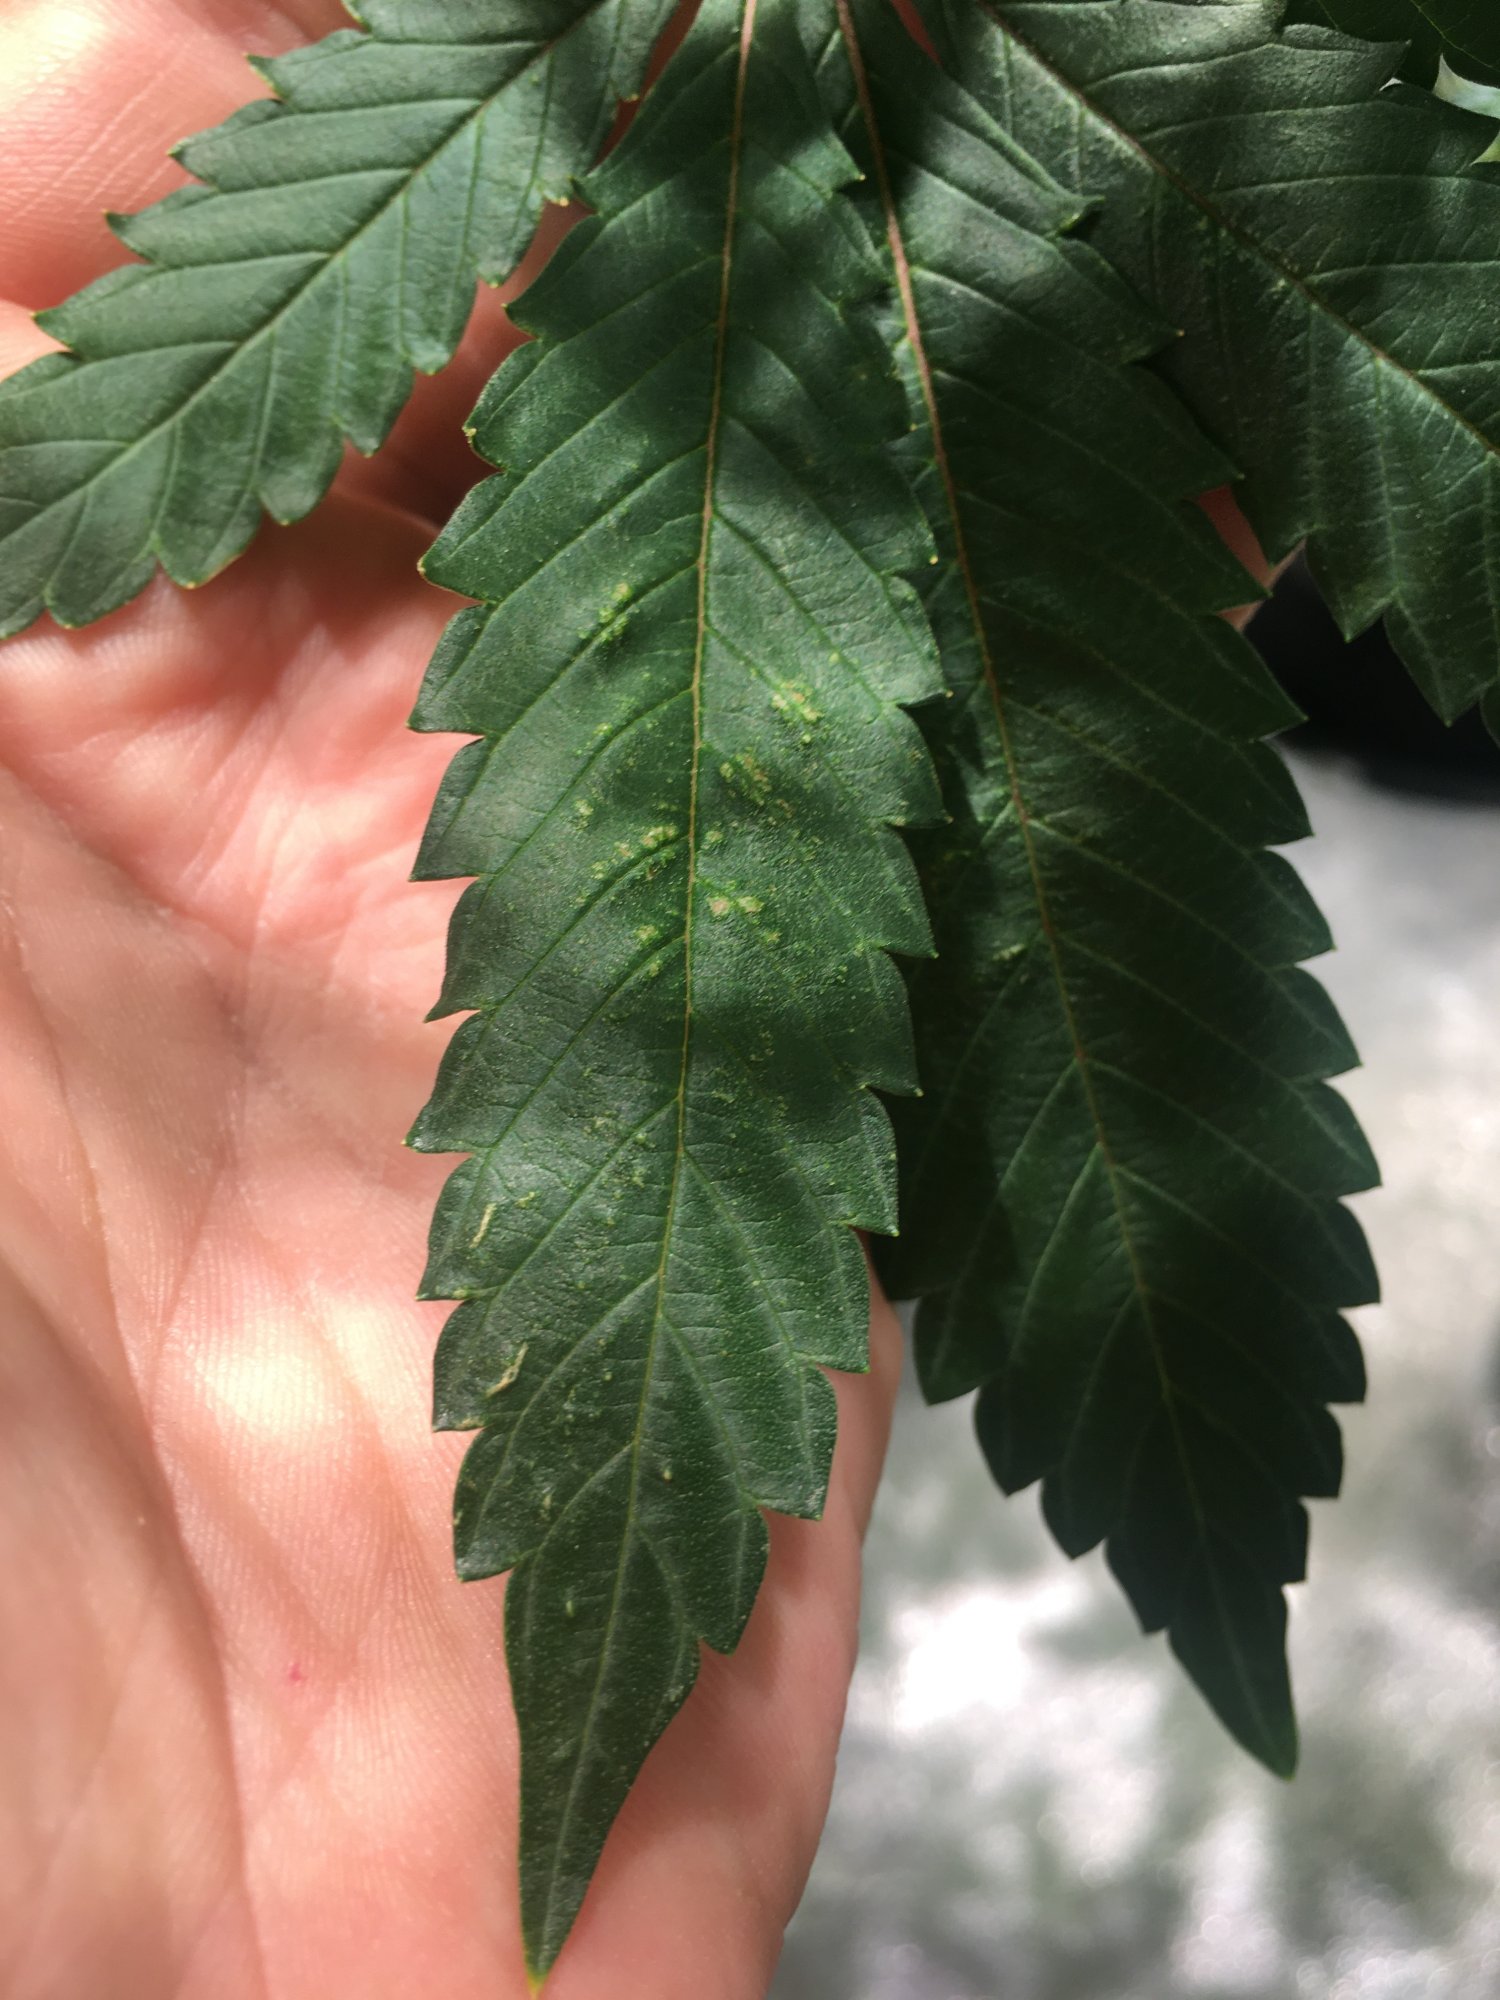 Cal deficiency and dark leaves in 4th week of flower